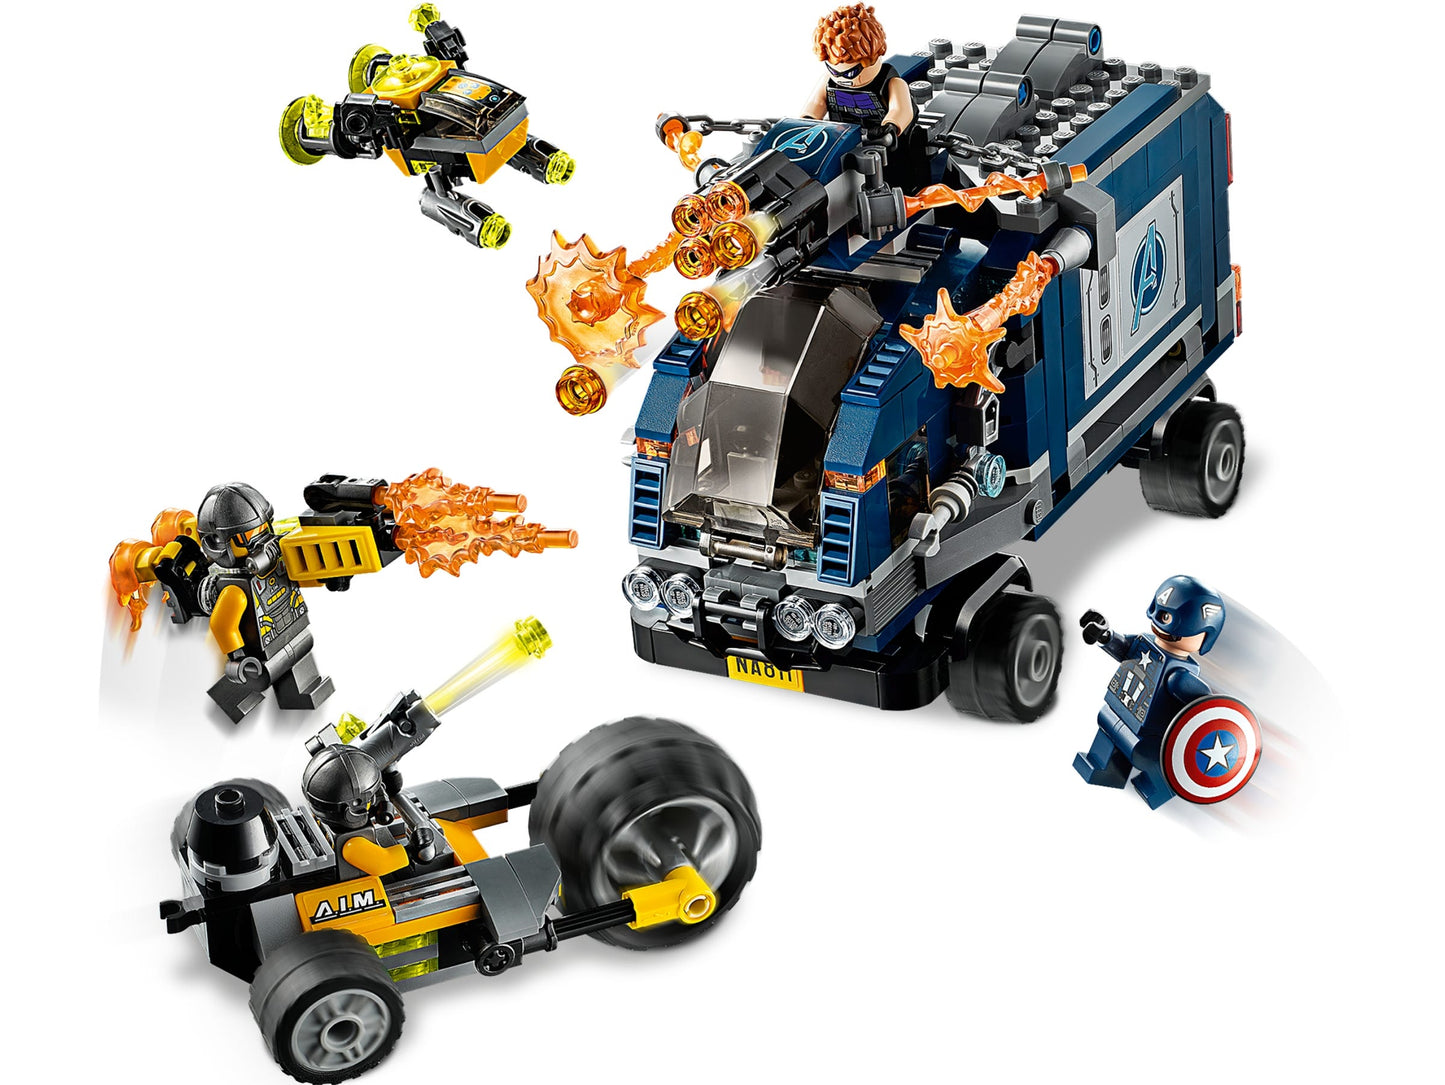 Lego Marvel Avengers Truck Take-down 76143